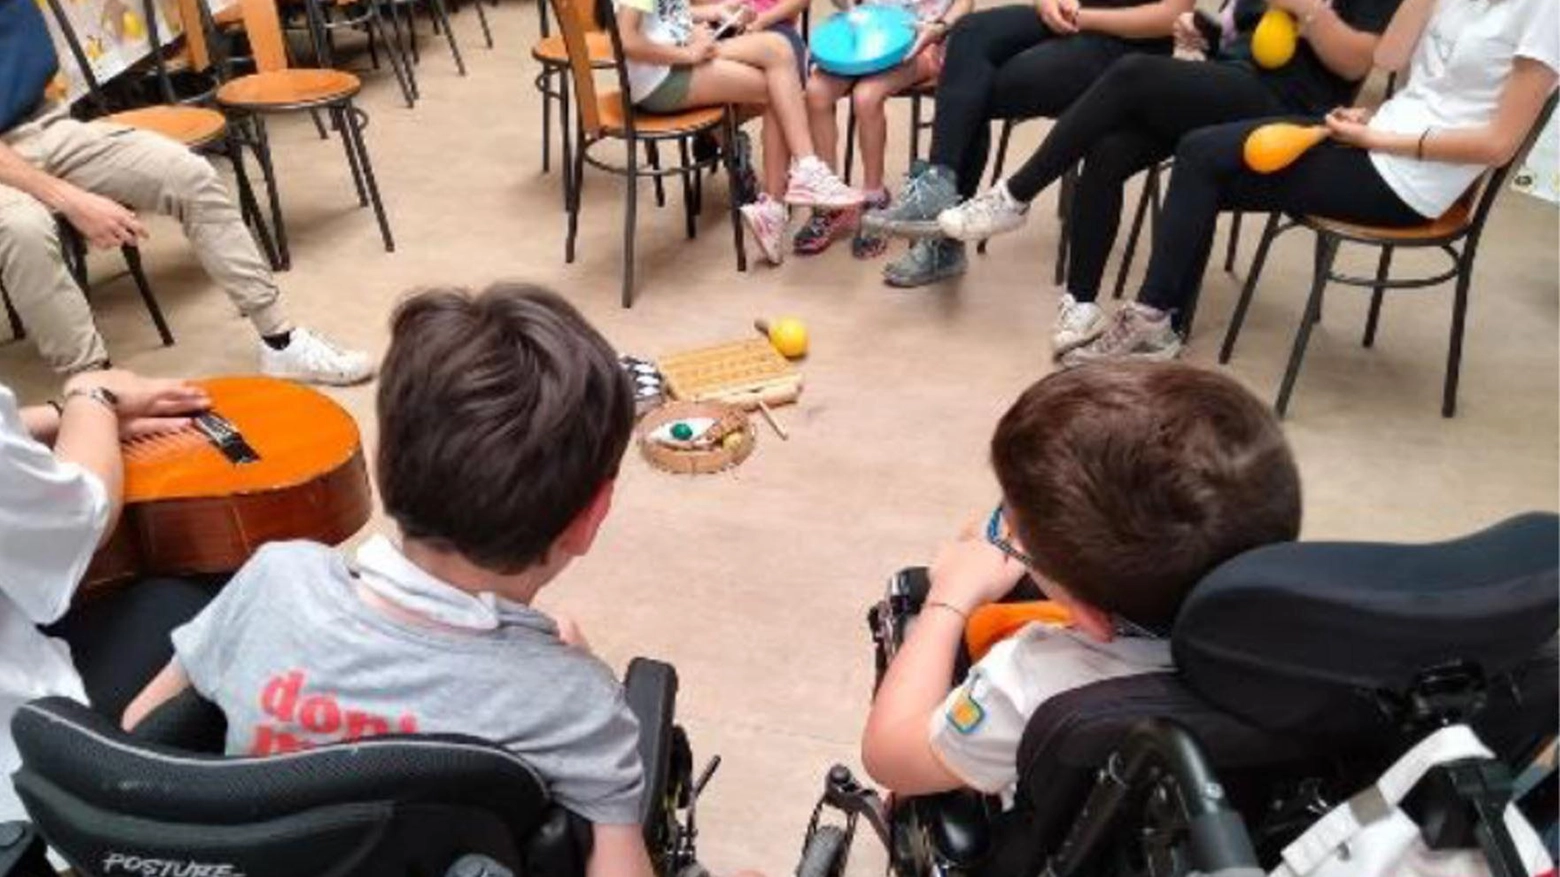 Barriere e disabilità  Bimbo di sette anni  rischia di stare a casa  Il Comune: "Non accadrà"